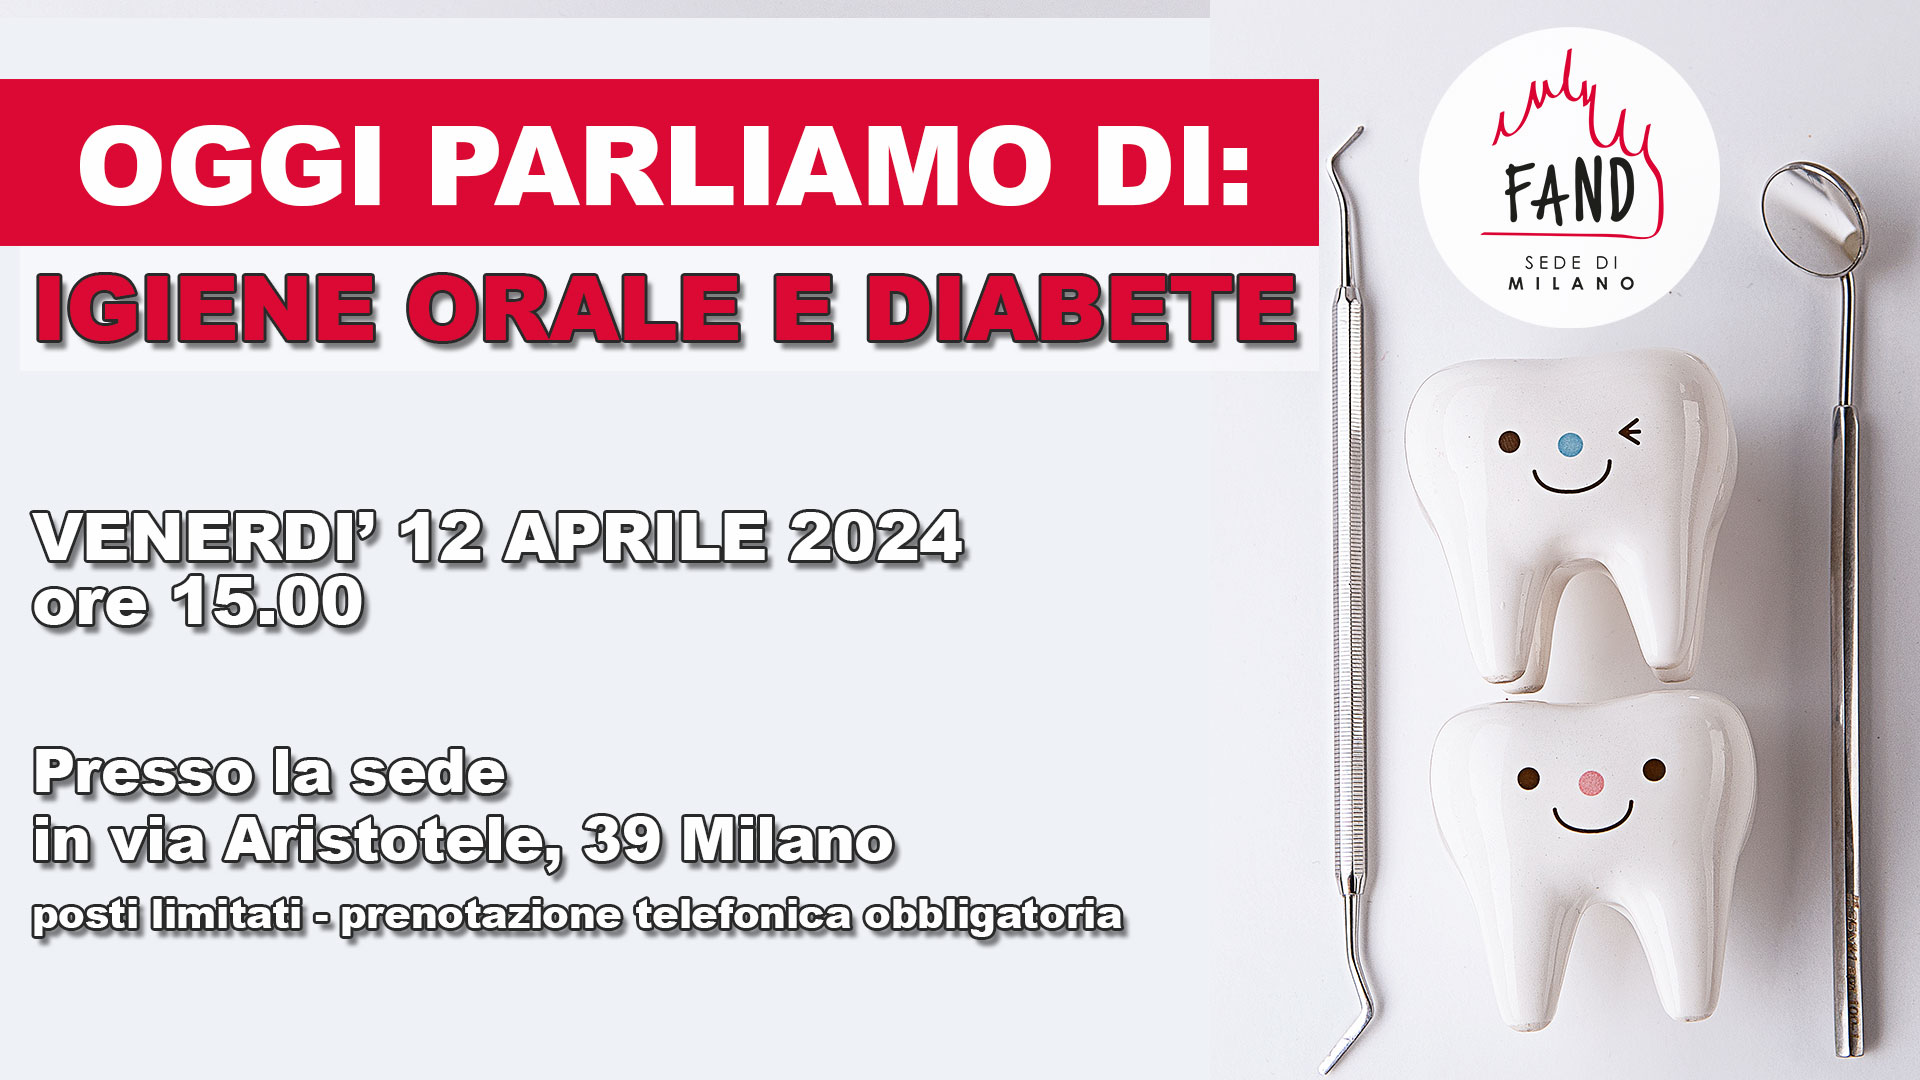 Venerdì 12 aprile - Oggi parliamo di: Igiene orale e diabete